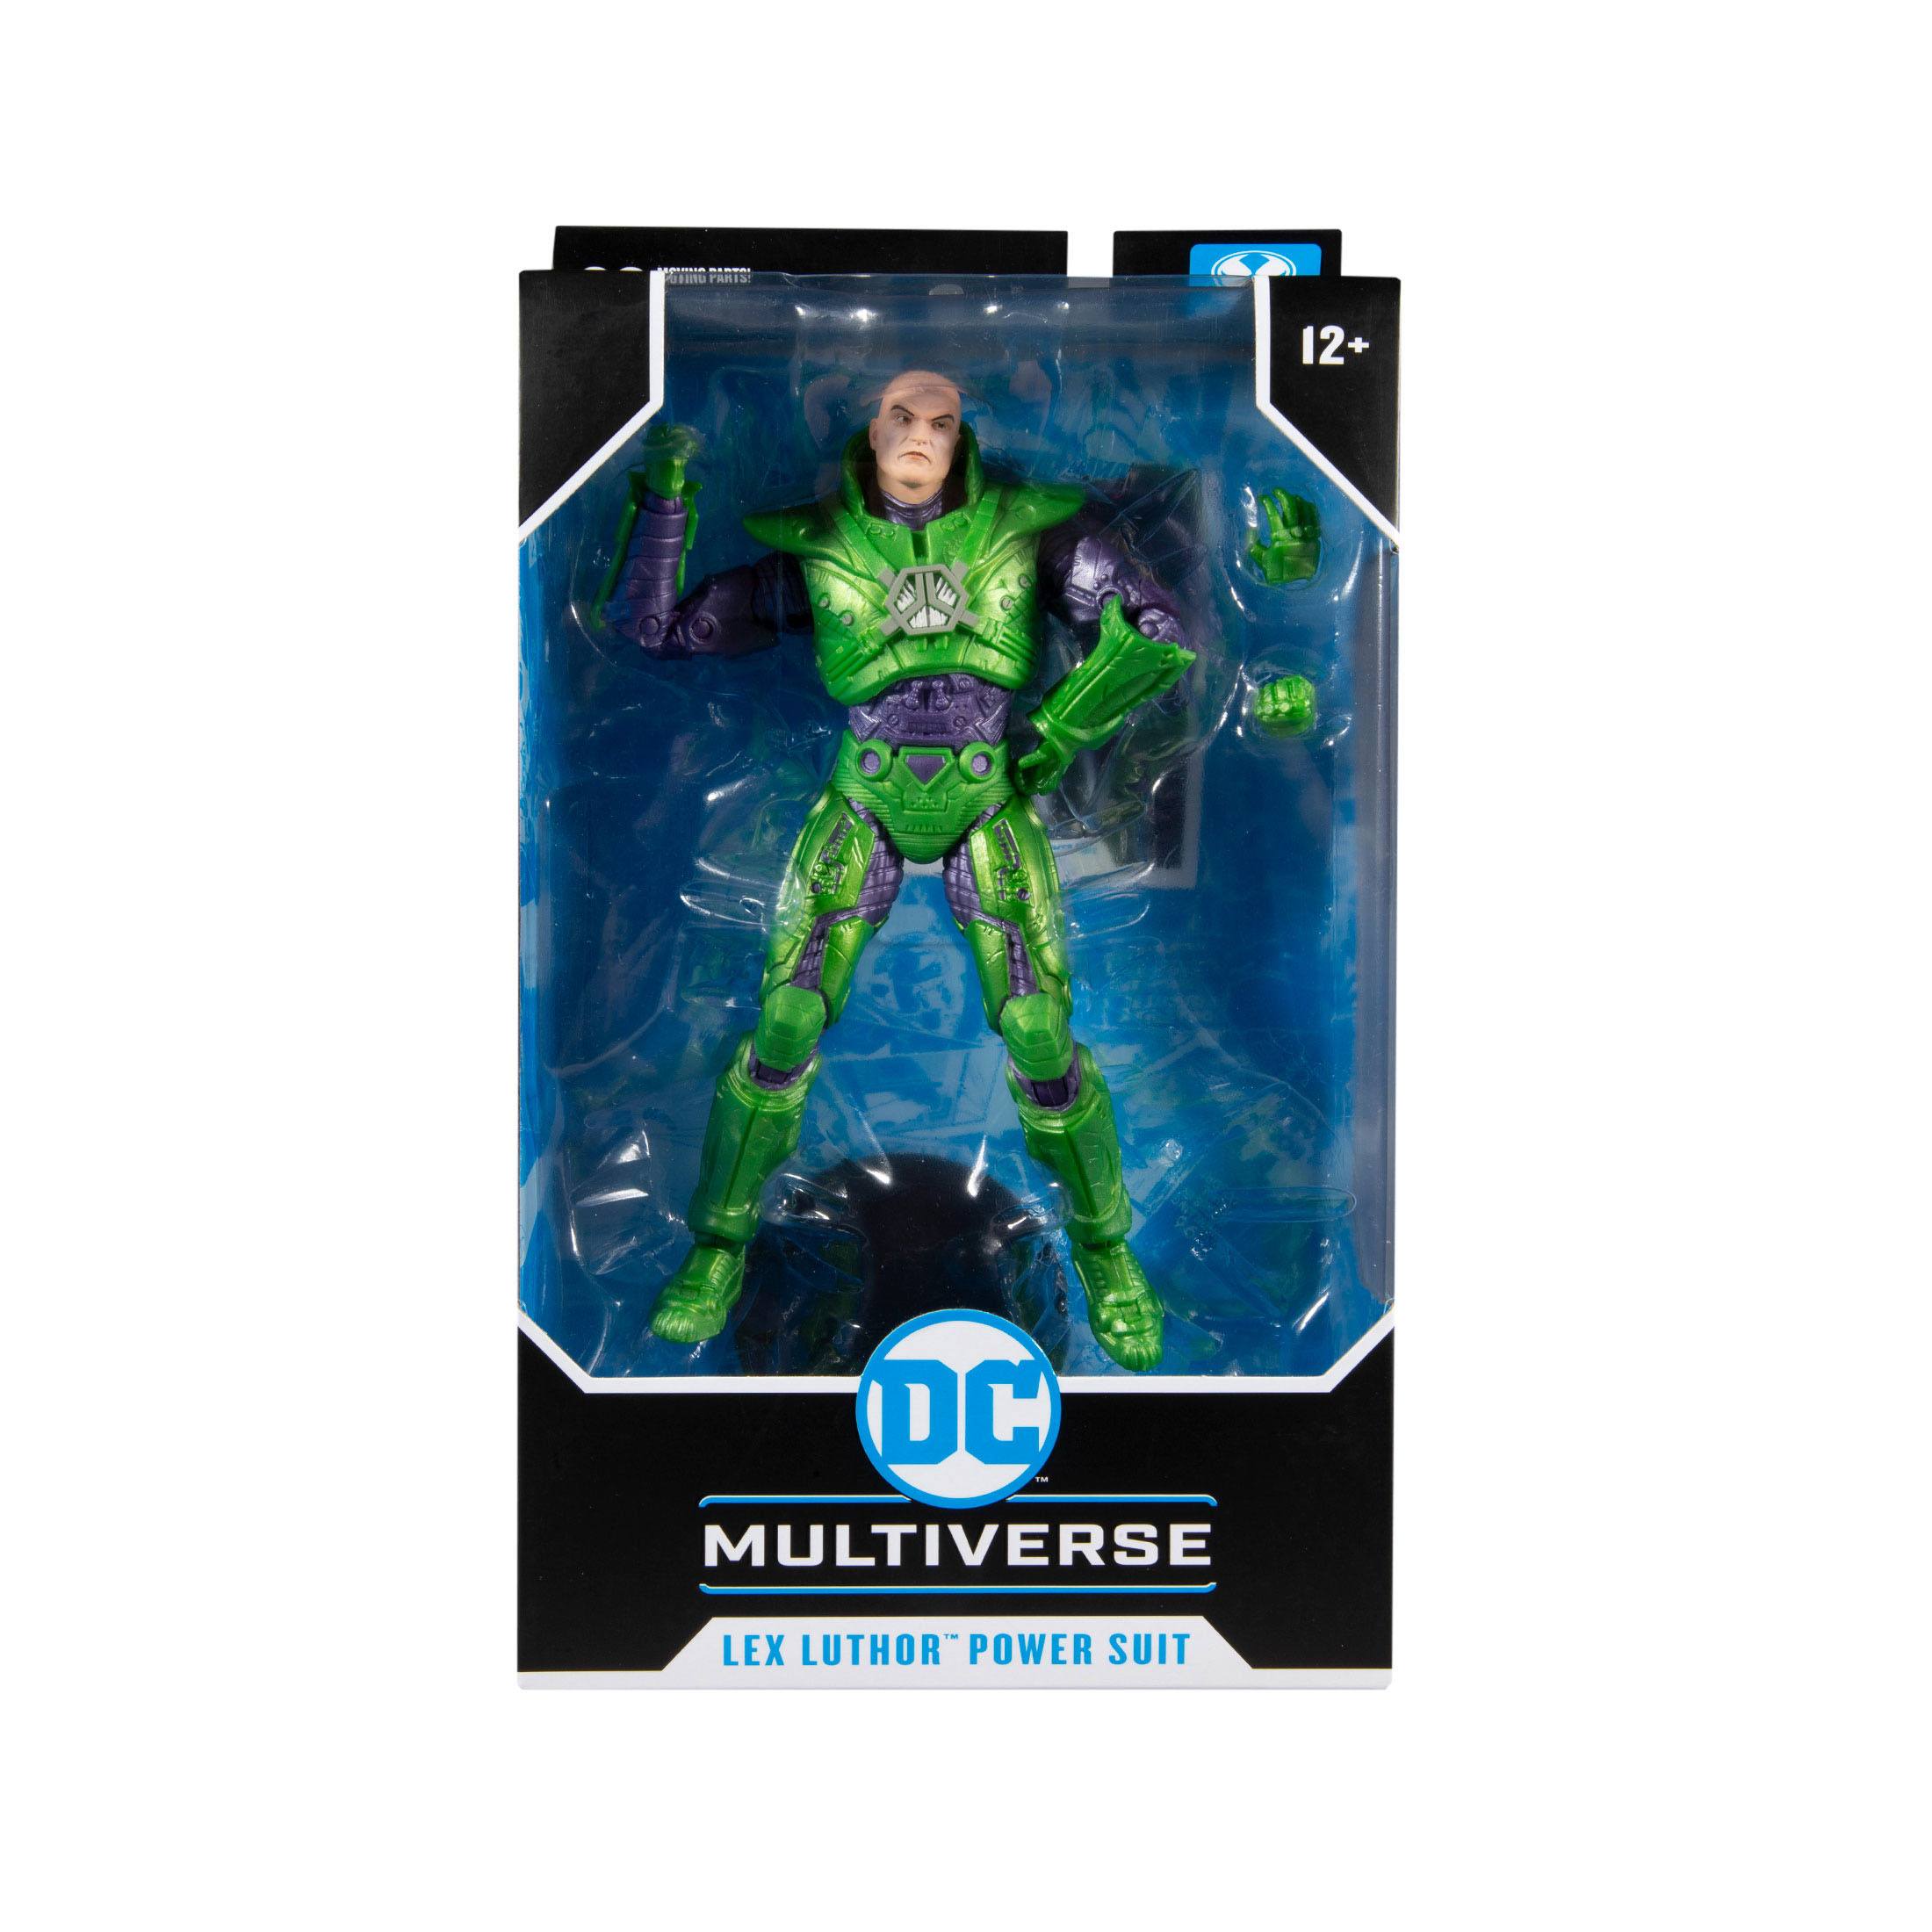 DC Multiverse Actionfigur Lex Luthor Power Suit DC New 52 18 cm MCF15176 787926151763